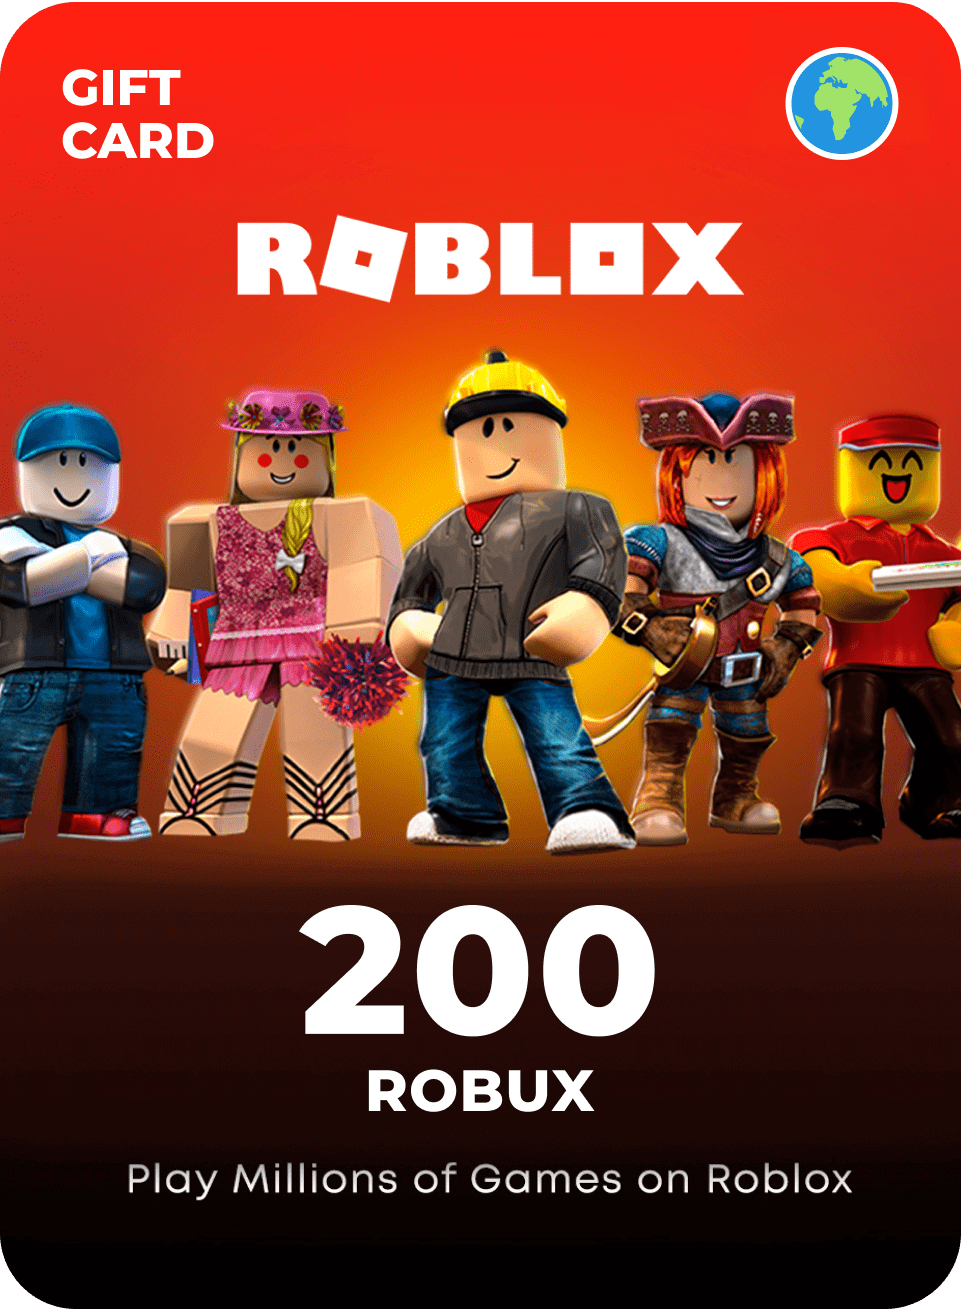 Roblox (PC)  Comprar Robux e Builders Club + Barato